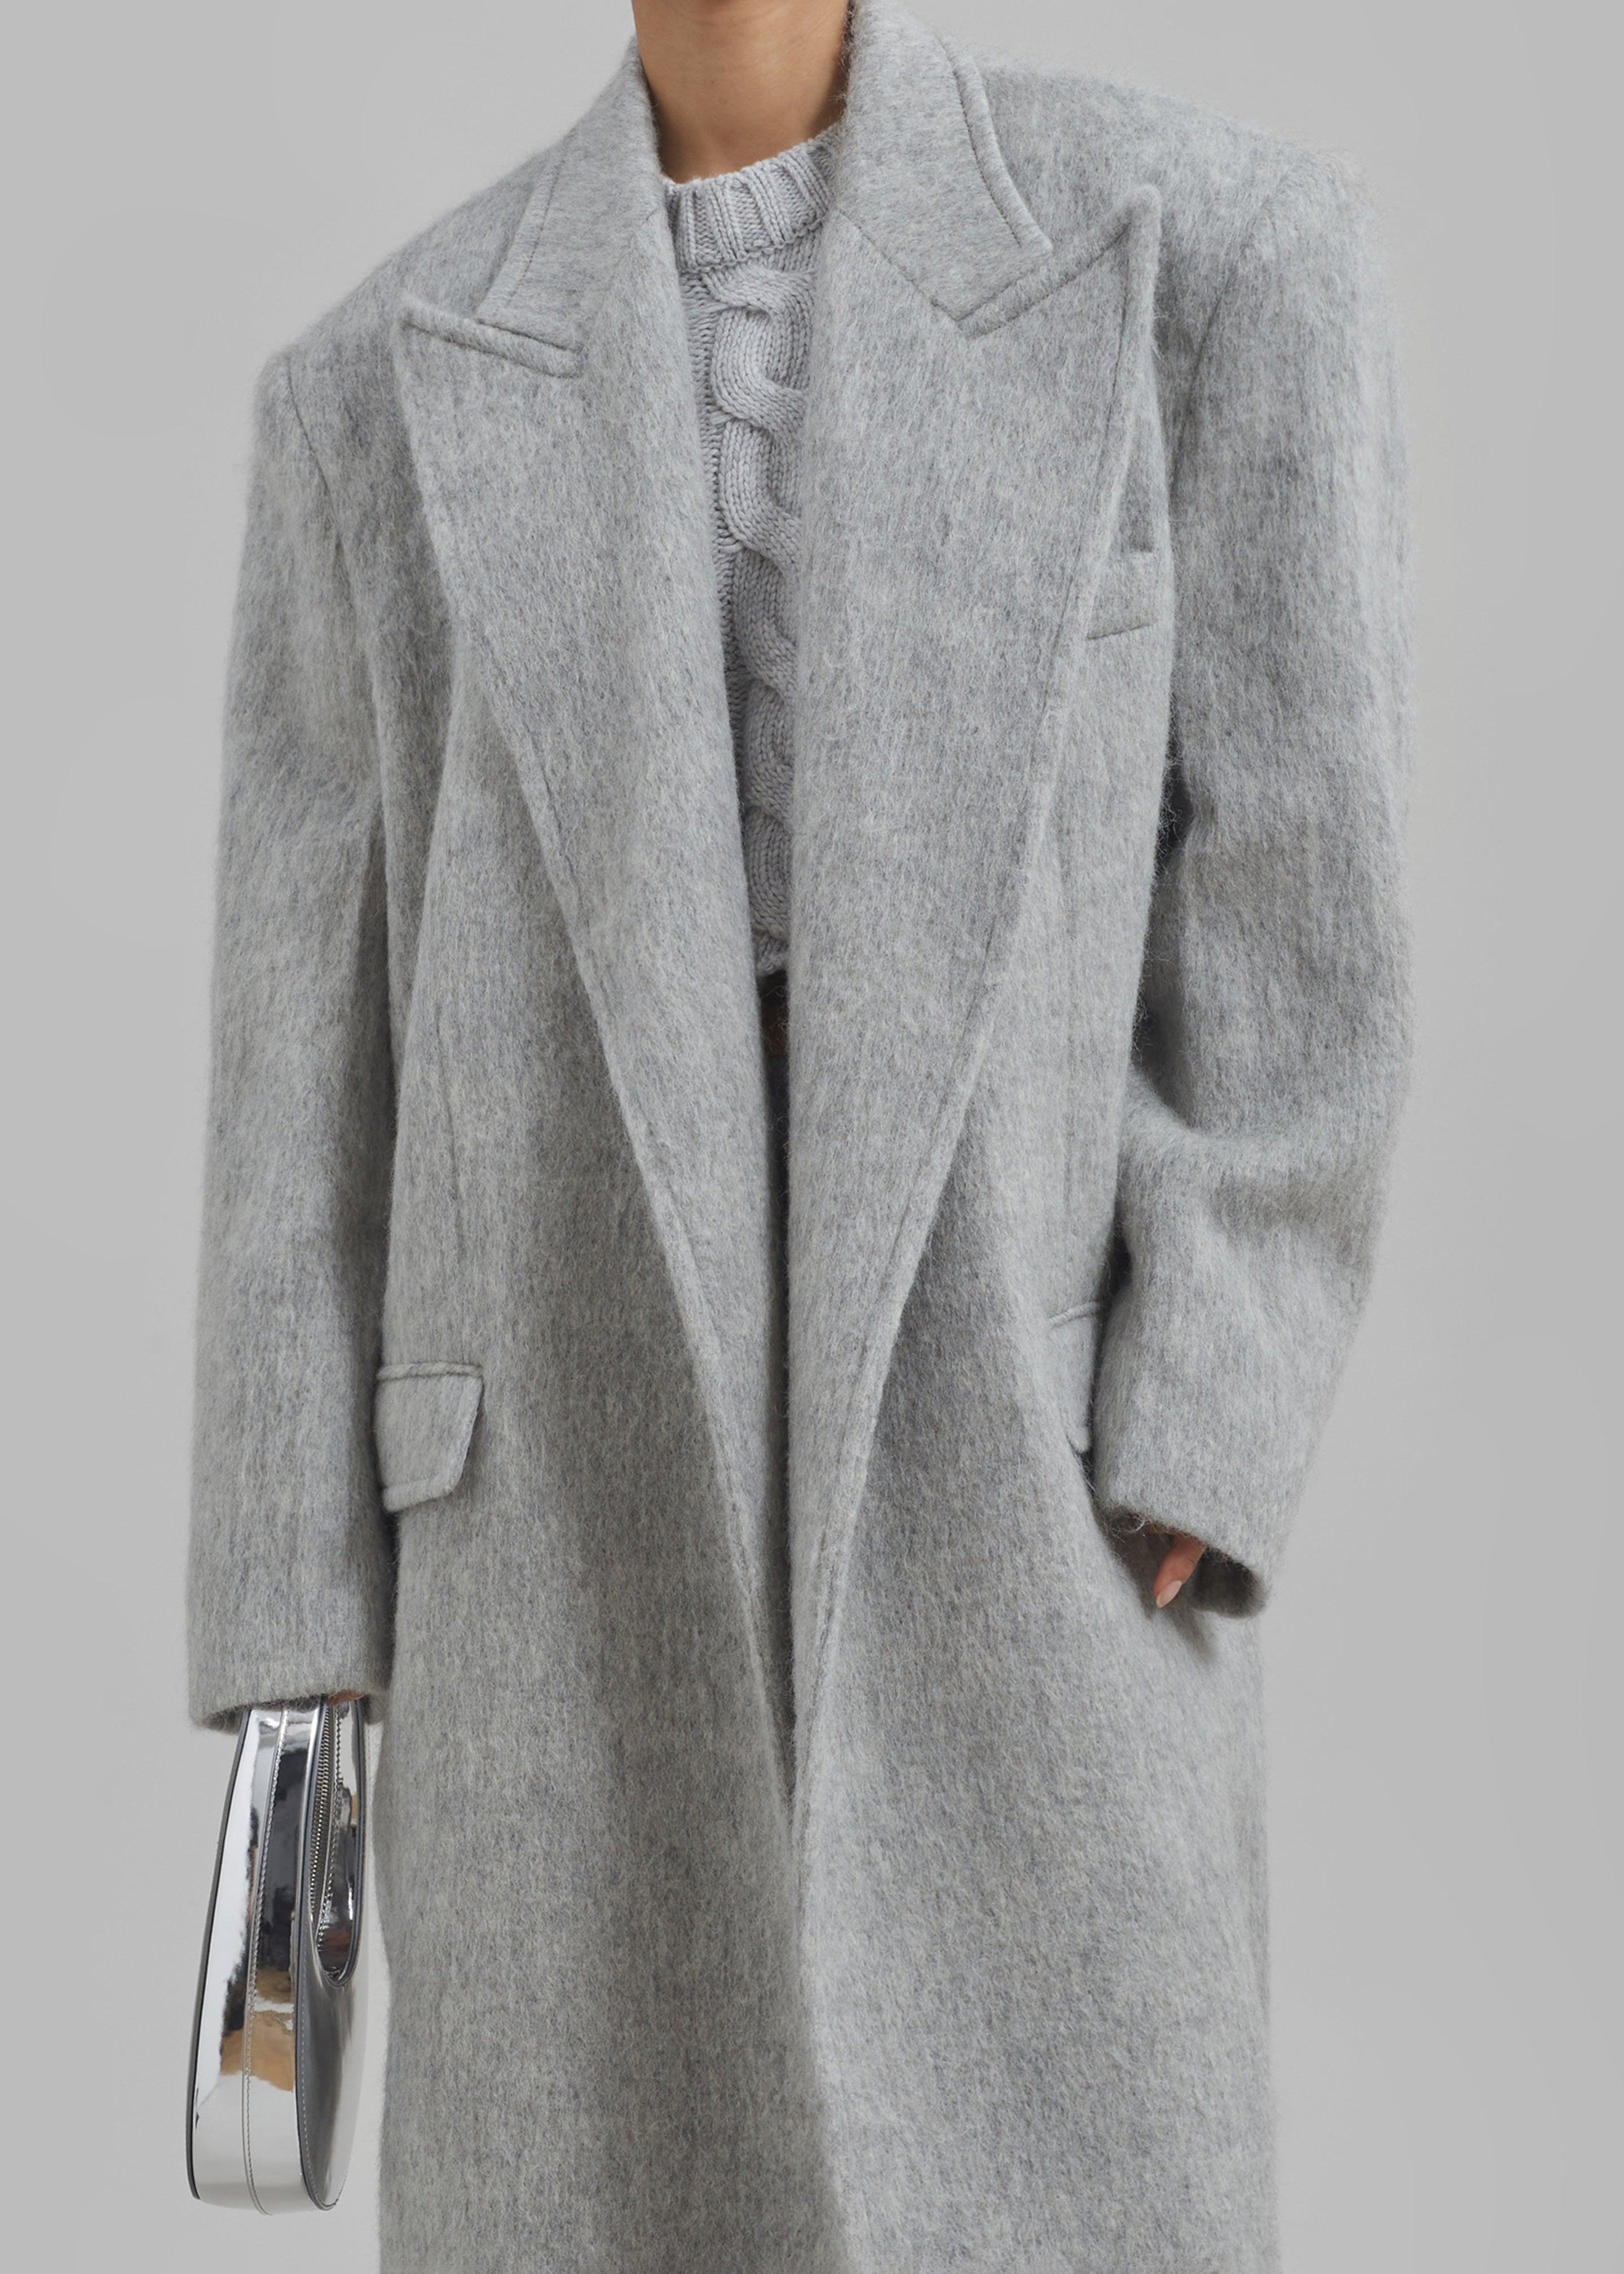 John Oversized Coat - Light Grey